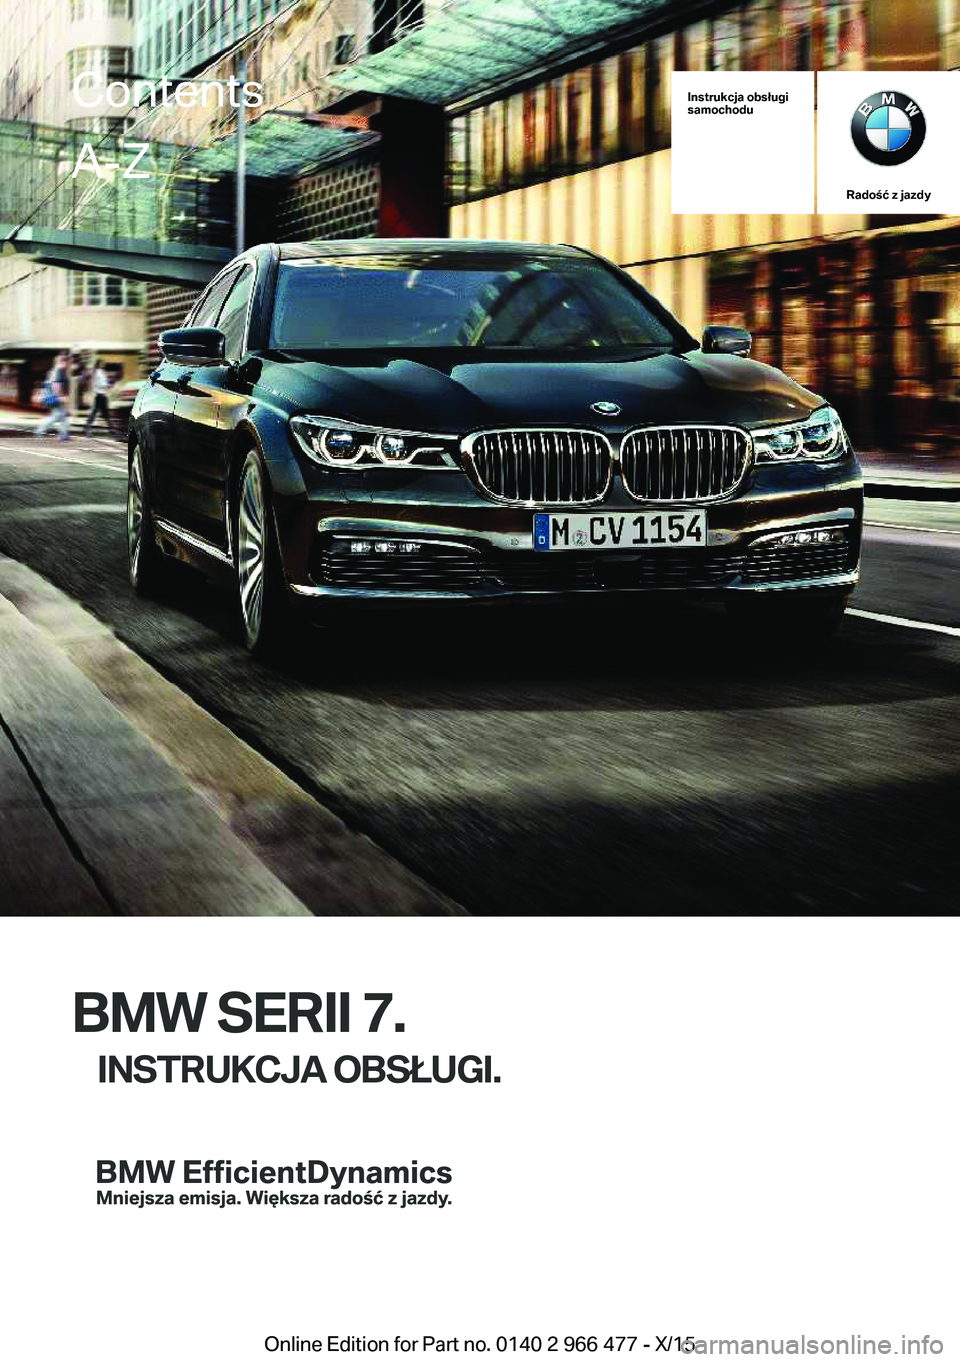 BMW 7 SERIES 2016  Instrukcja obsługi (in Polish) Instrukcja obsługi
samochodu
Radość z jazdy
BMW SERII 7.
INSTRUKCJA OBSŁUGI.
ContentsA-Z
Online Edition for Part no. 0140 2 966 477 - X/15   